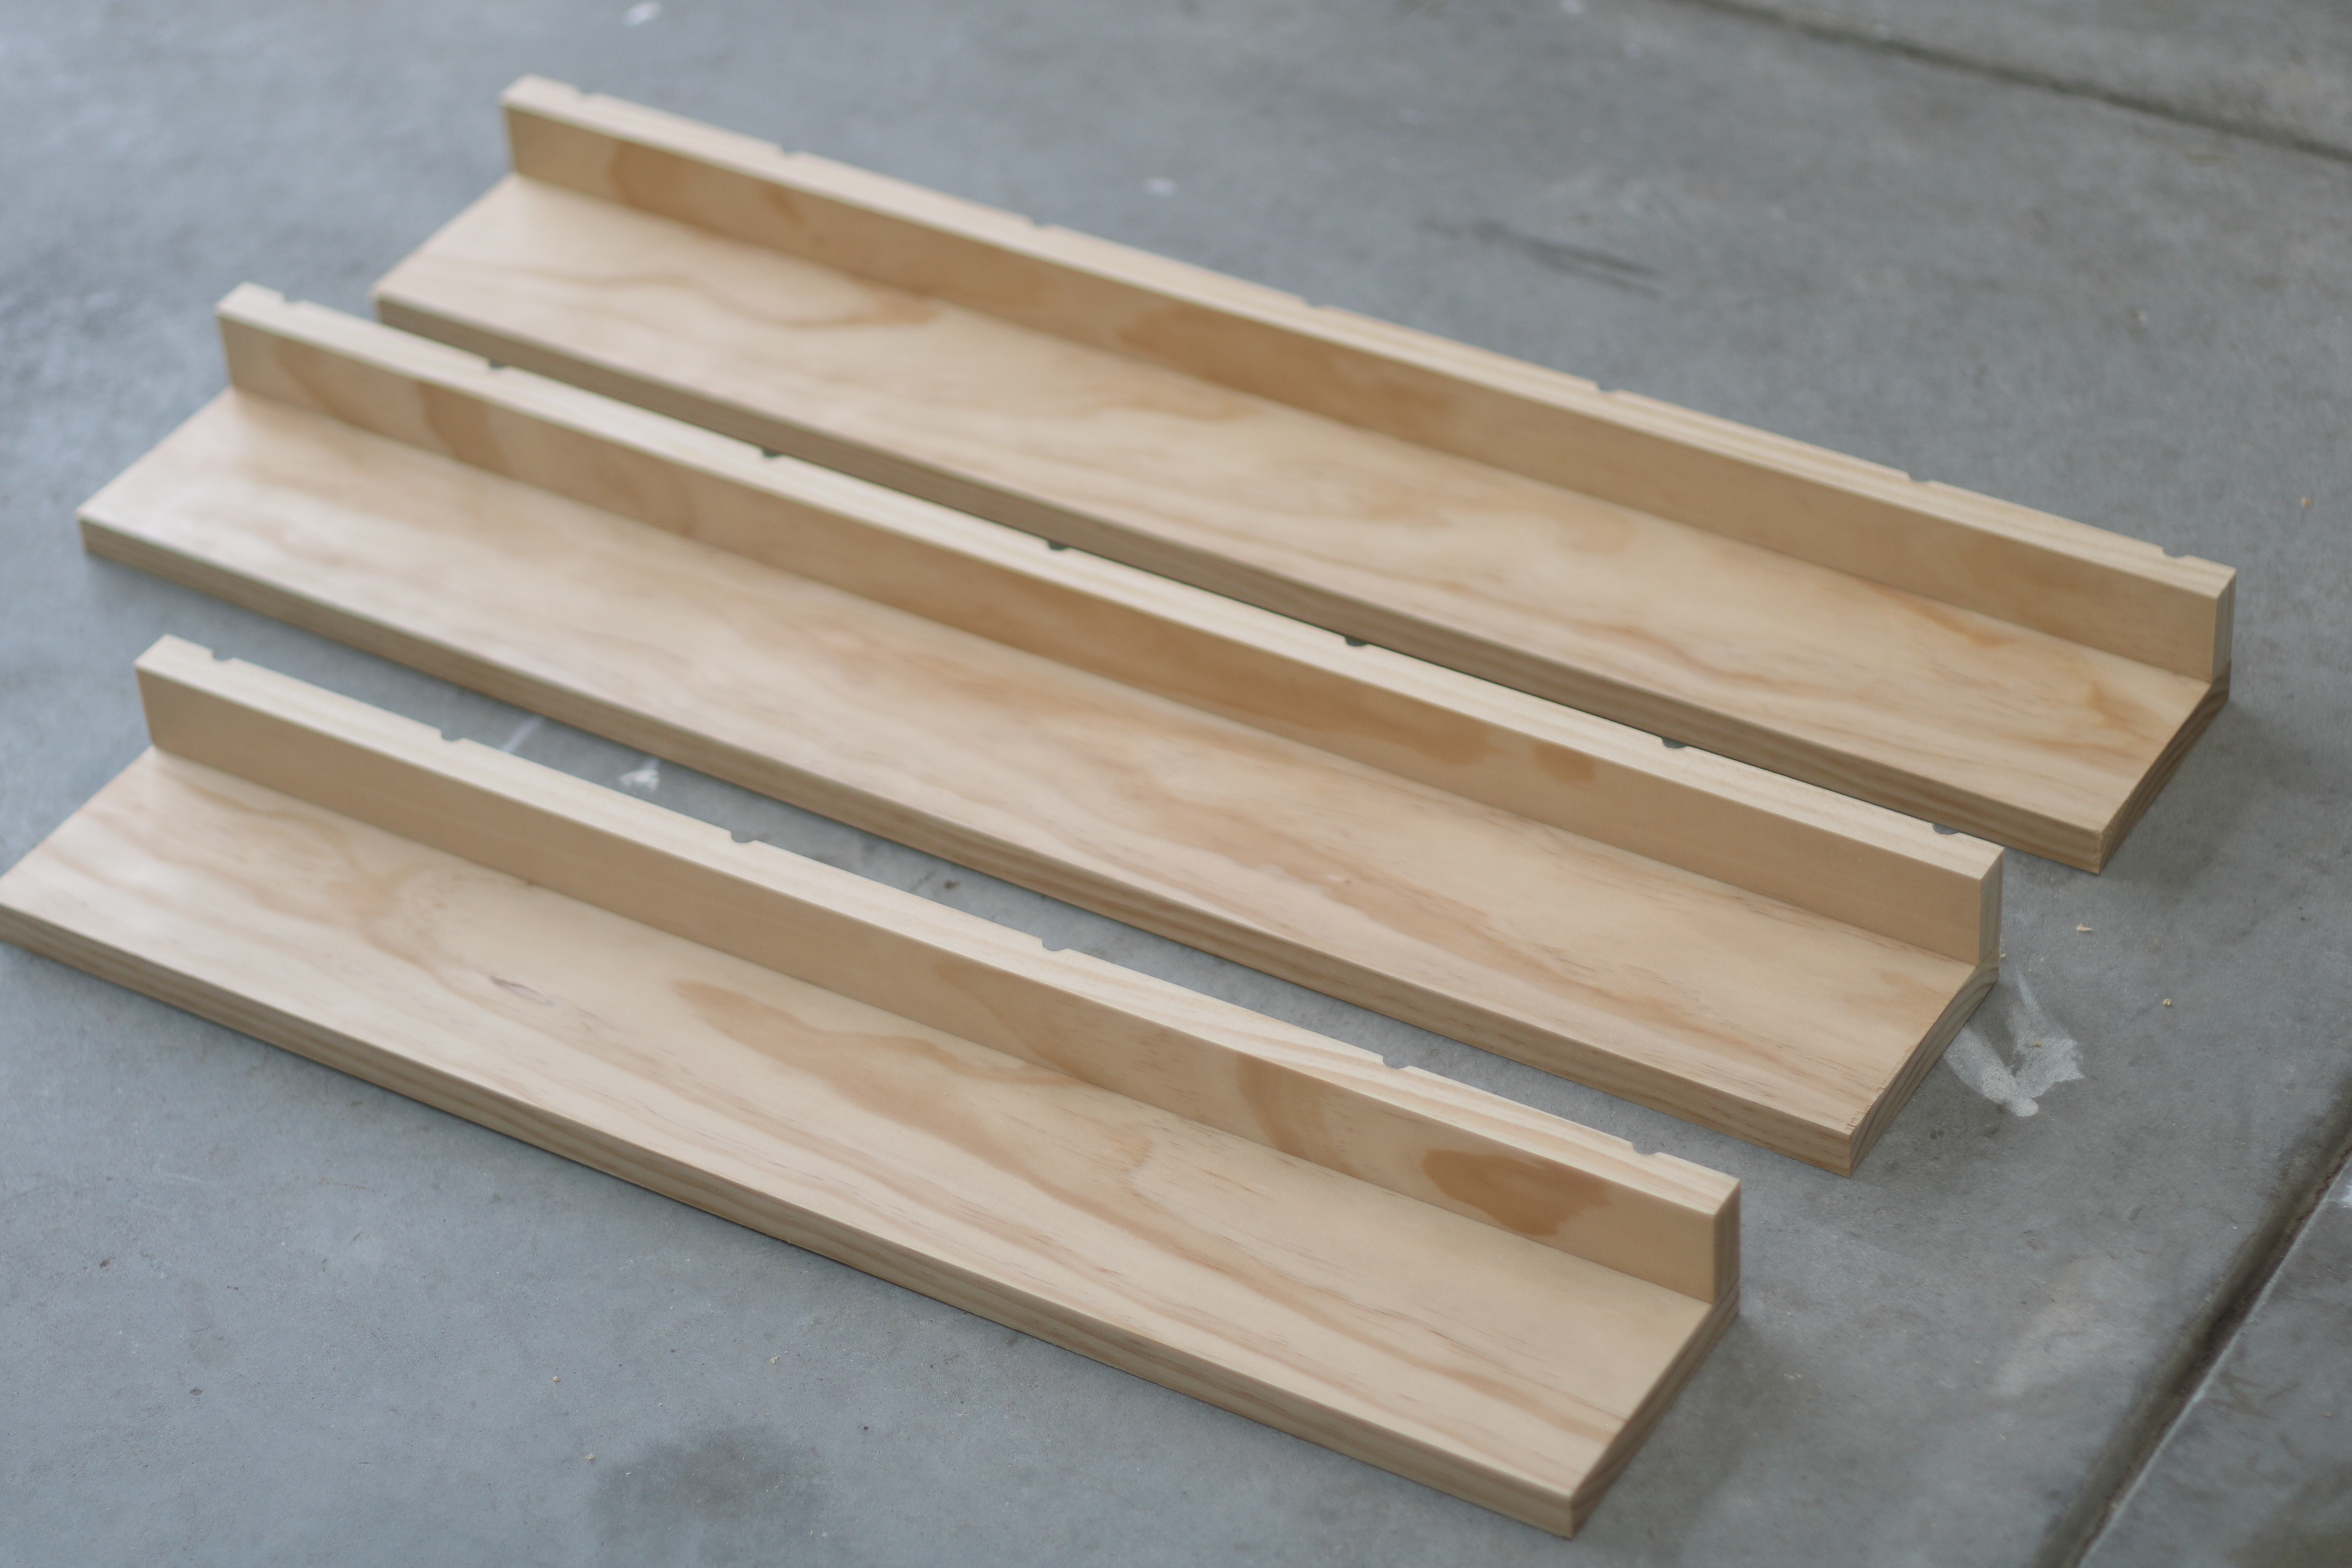 Wood shelves